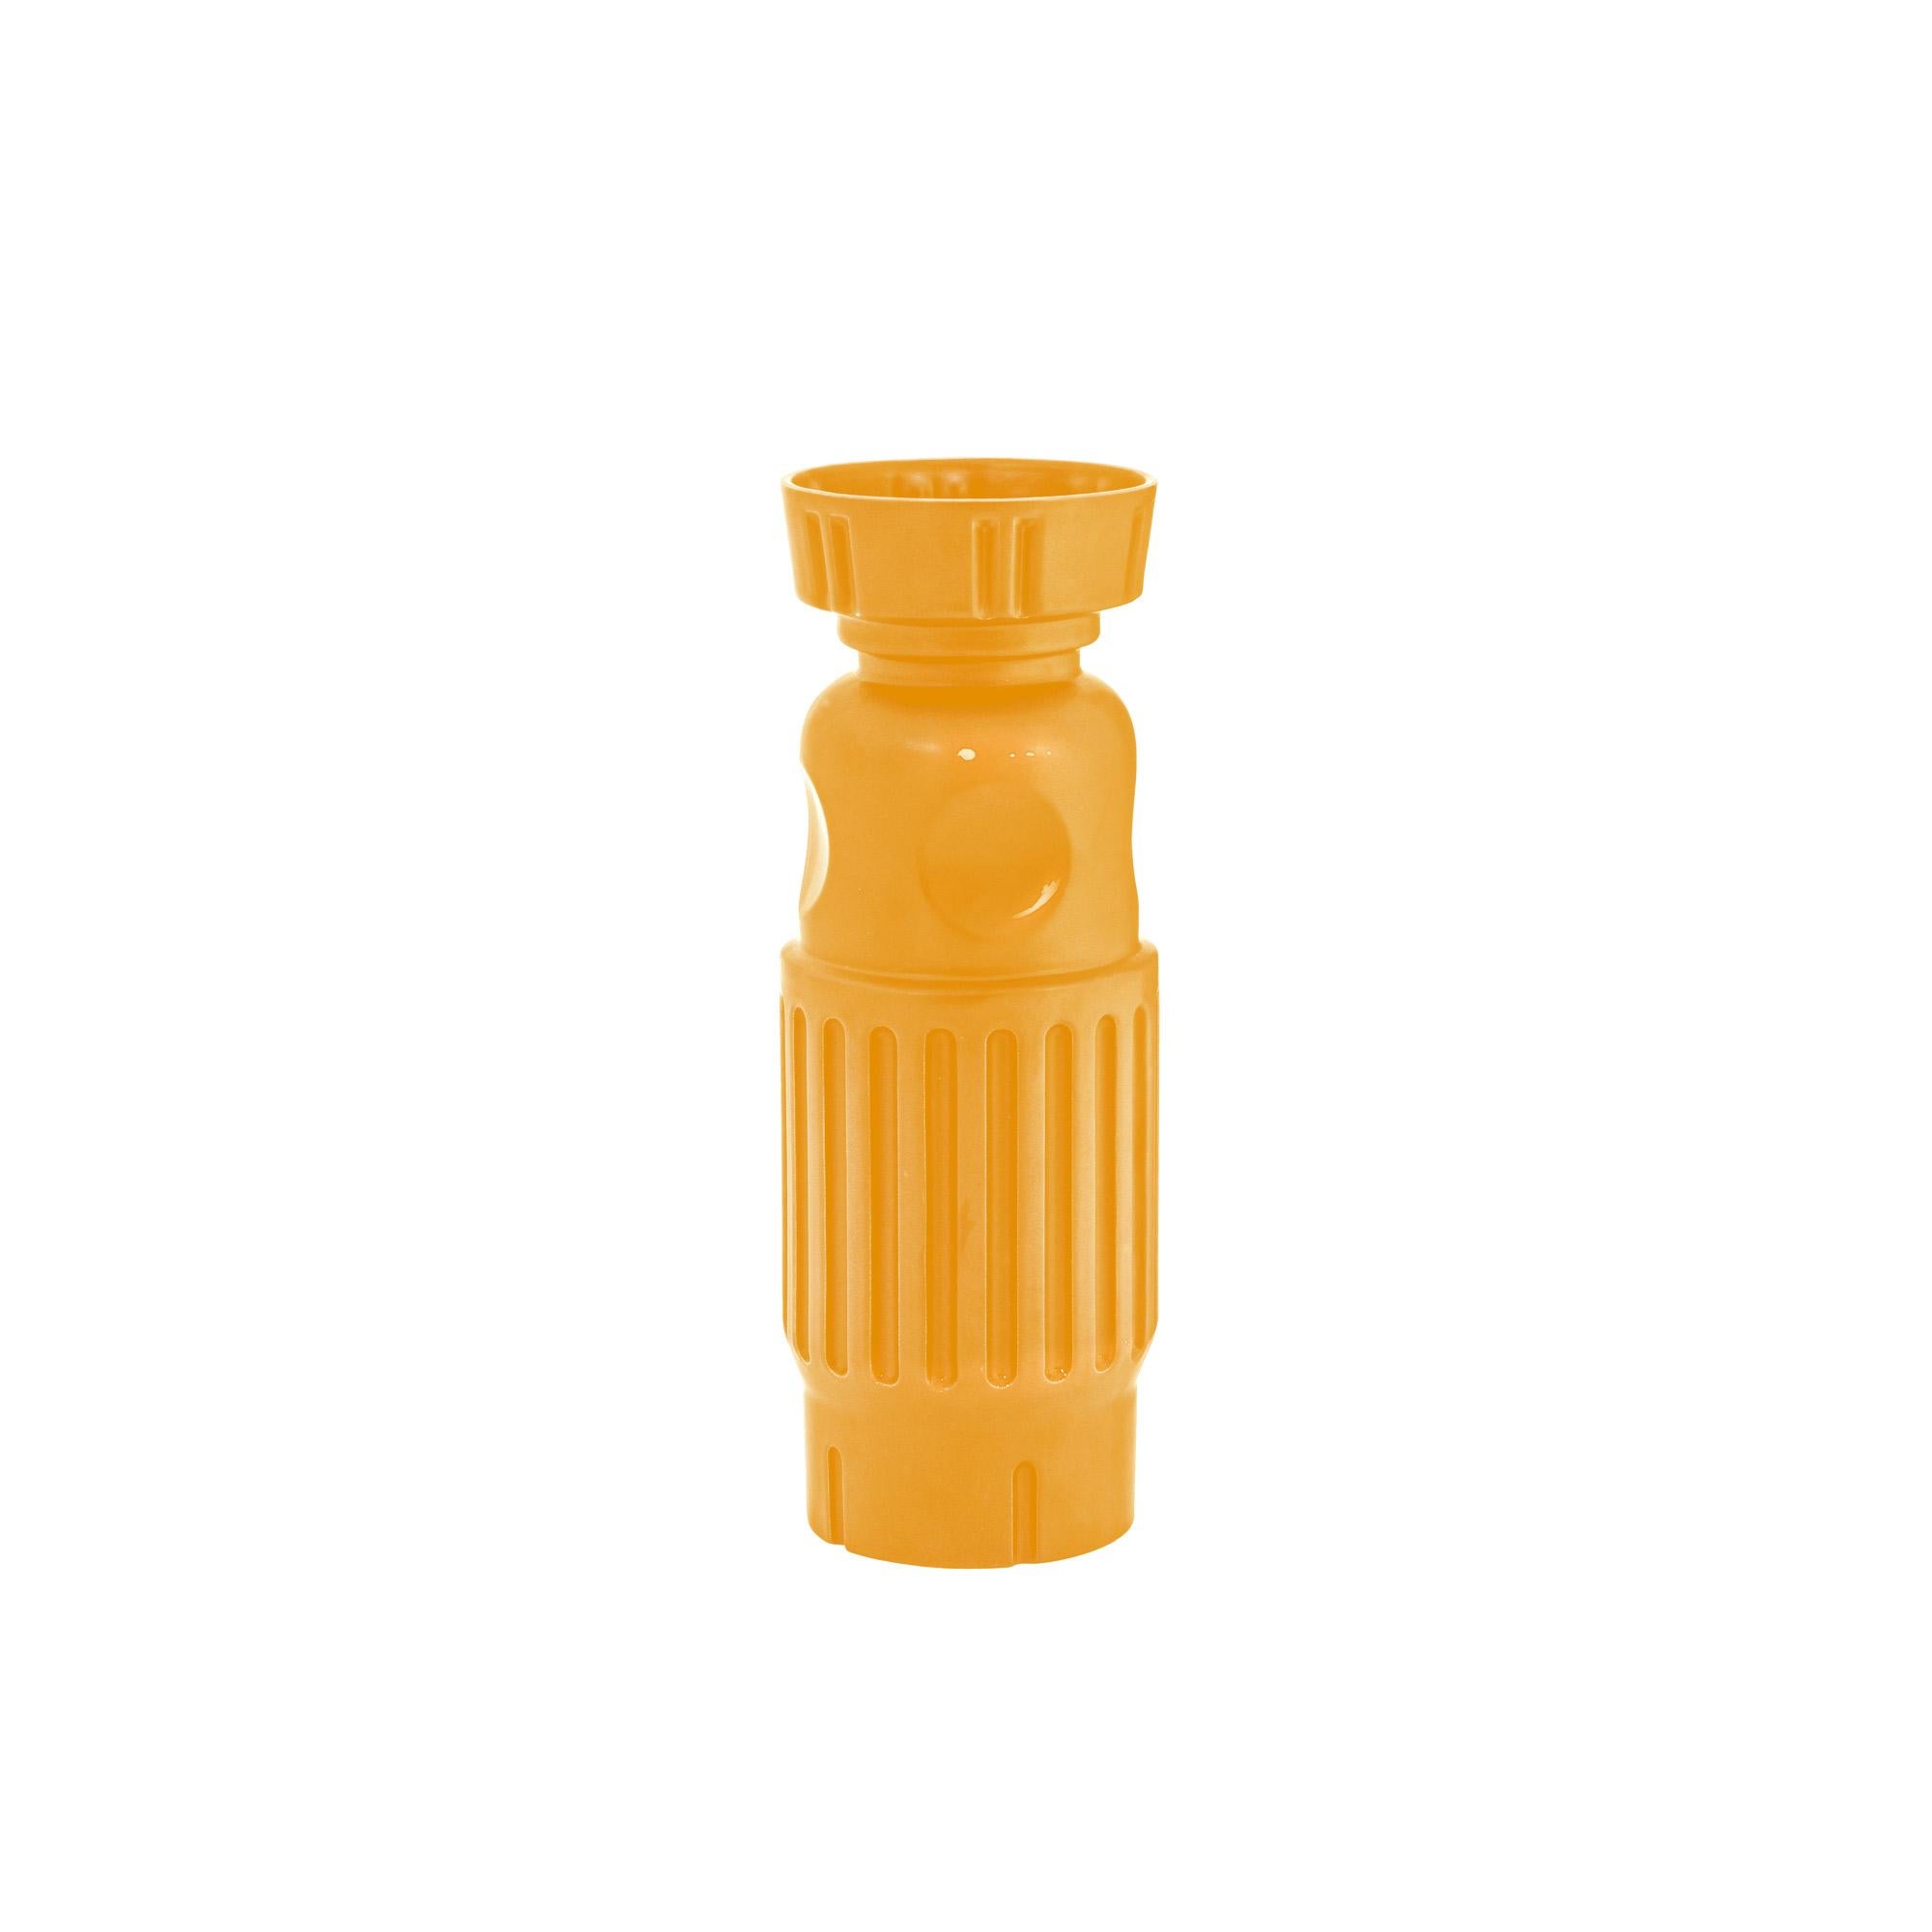 Fg 2 Gelbe Vase und Schachtel von Pulpo
Abmessungen: D14 x H40 cm
MATERIALIEN: Keramik

Auch in verschiedenen Farben erhältlich. Bitte kontaktieren Sie uns.

Die keramischen Objekte der Serie fg, die sowohl futuristisch als auch ein altes Relikt